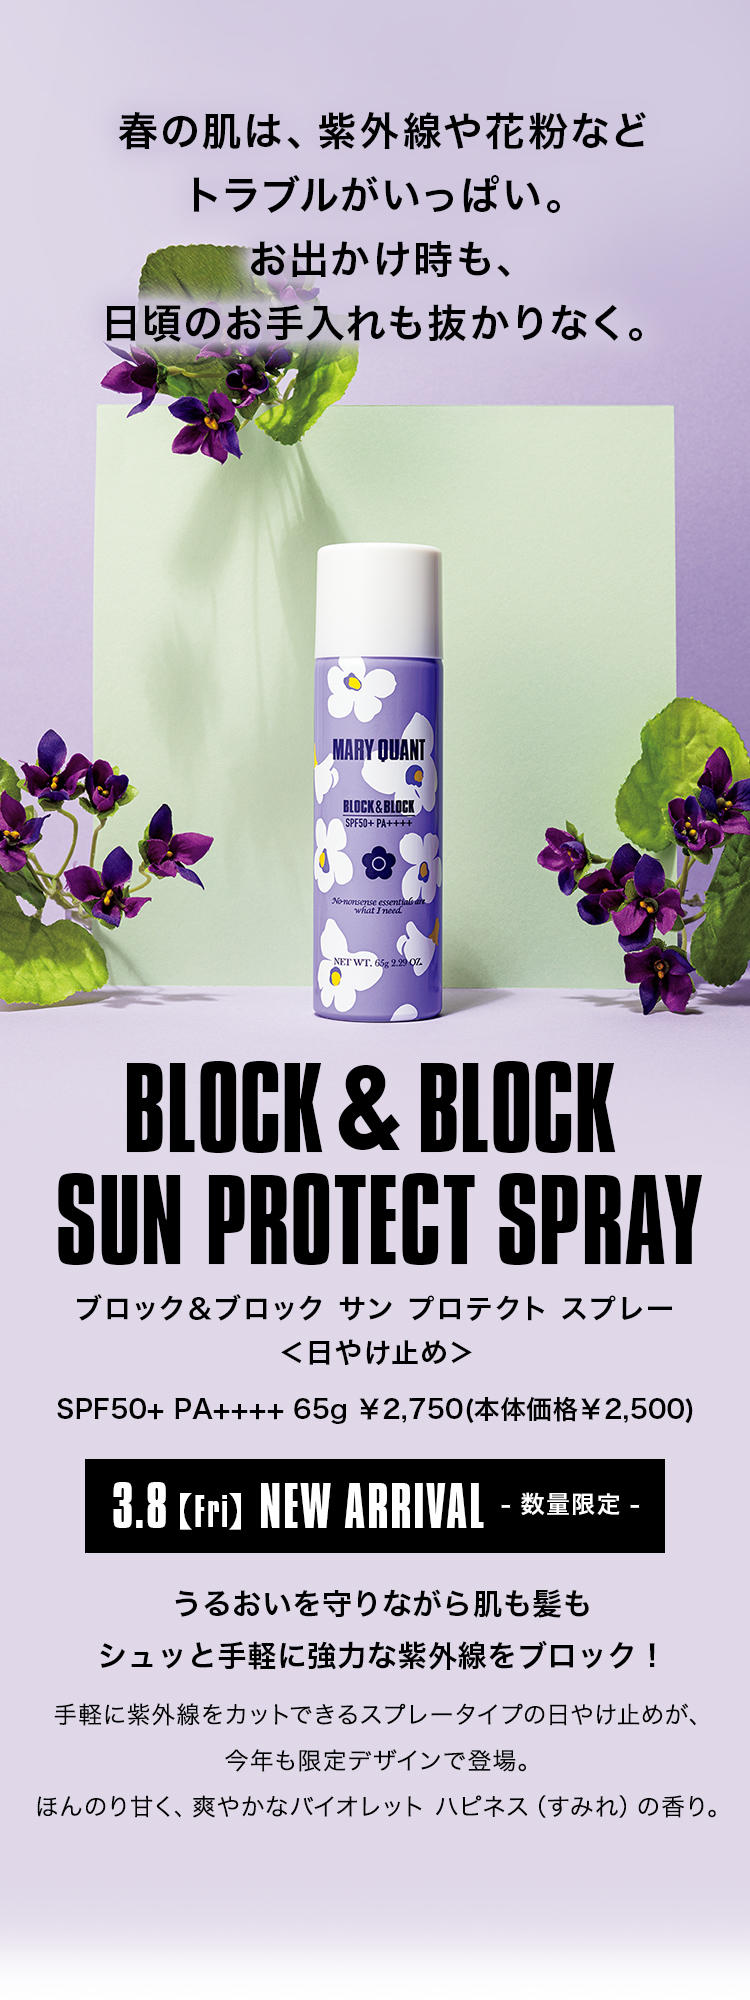 春の肌は、紫外線や花粉などトラブルがいっぱい。お出かけ時も、日頃のお手入れも抜かりなく。BLOCK&BLOCK SUN PROTECT SPRAY